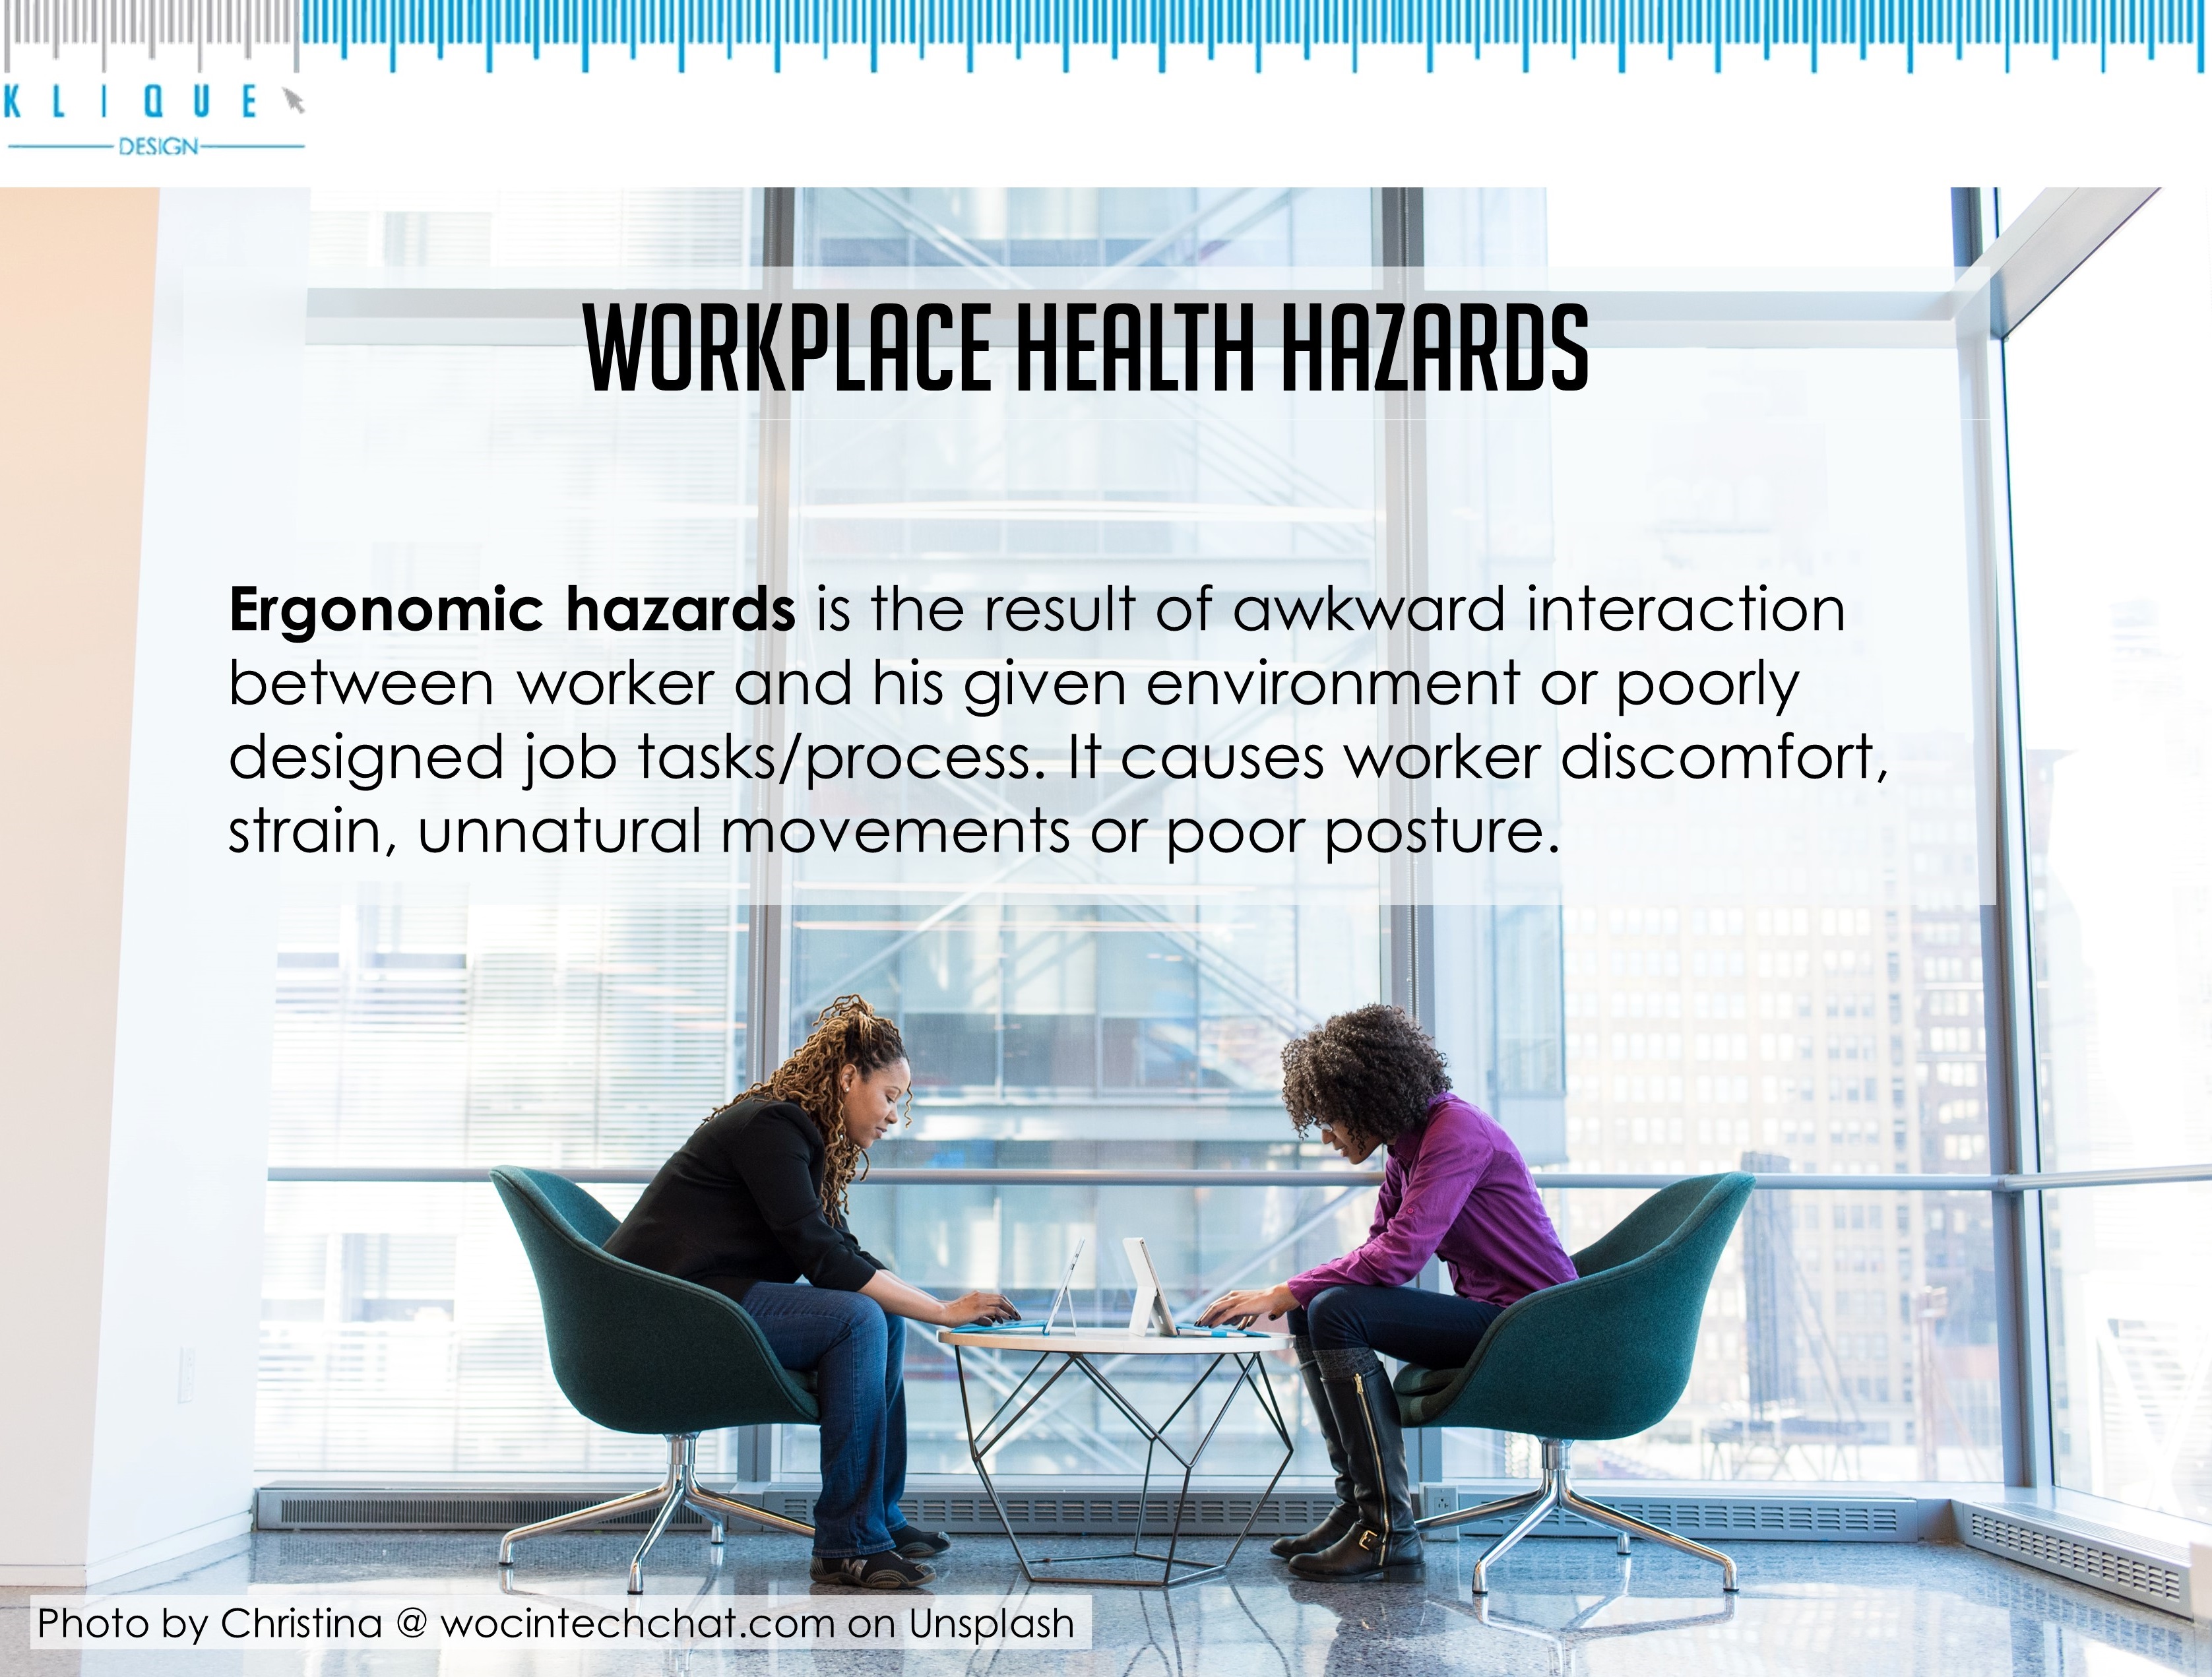 Workplace health hazards - ergonomic hazards